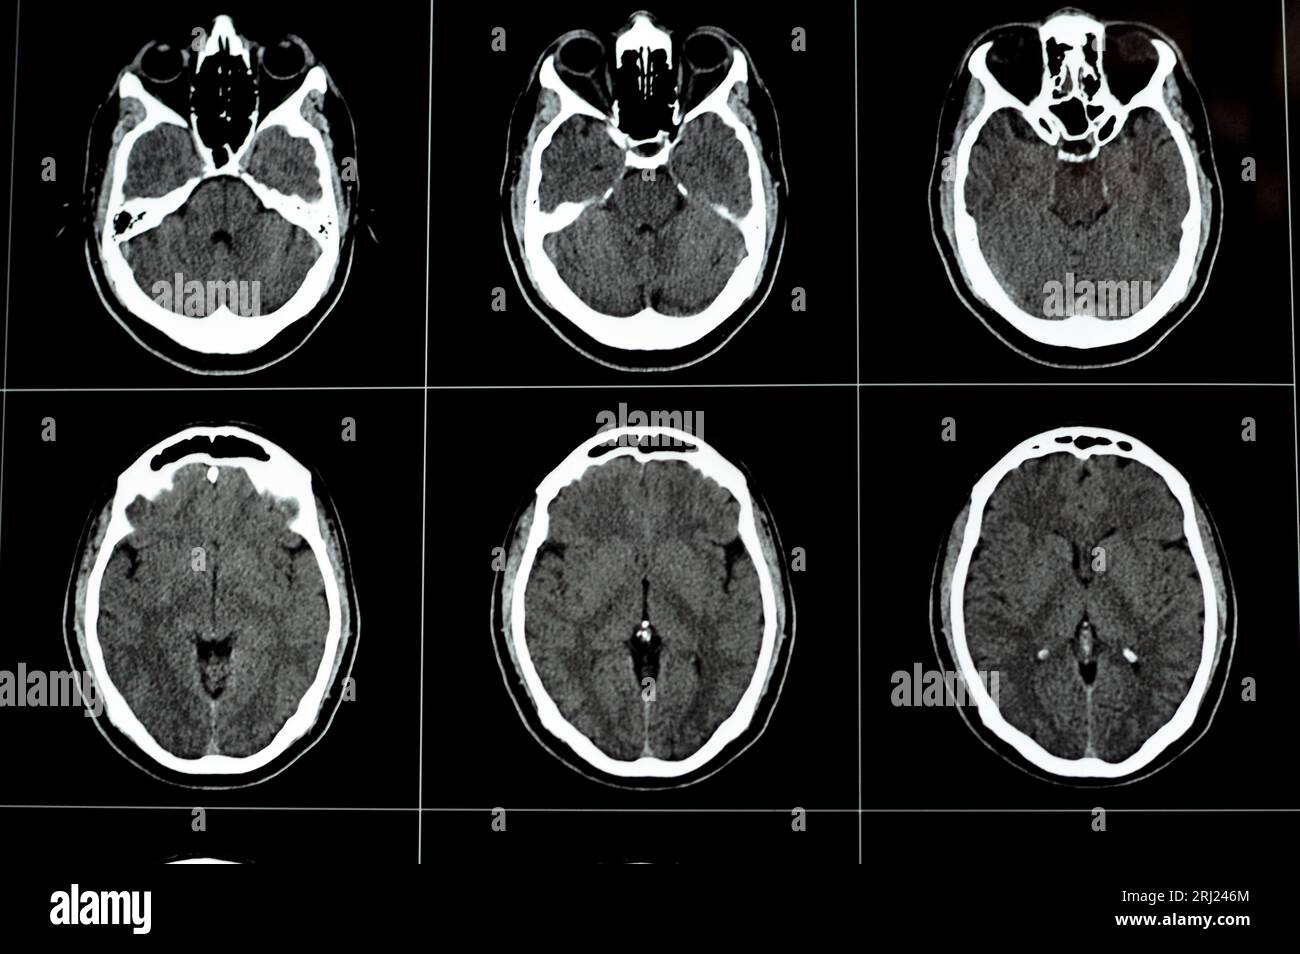 Lesione cerebrale immagini e fotografie stock ad alta risoluzione - Alamy